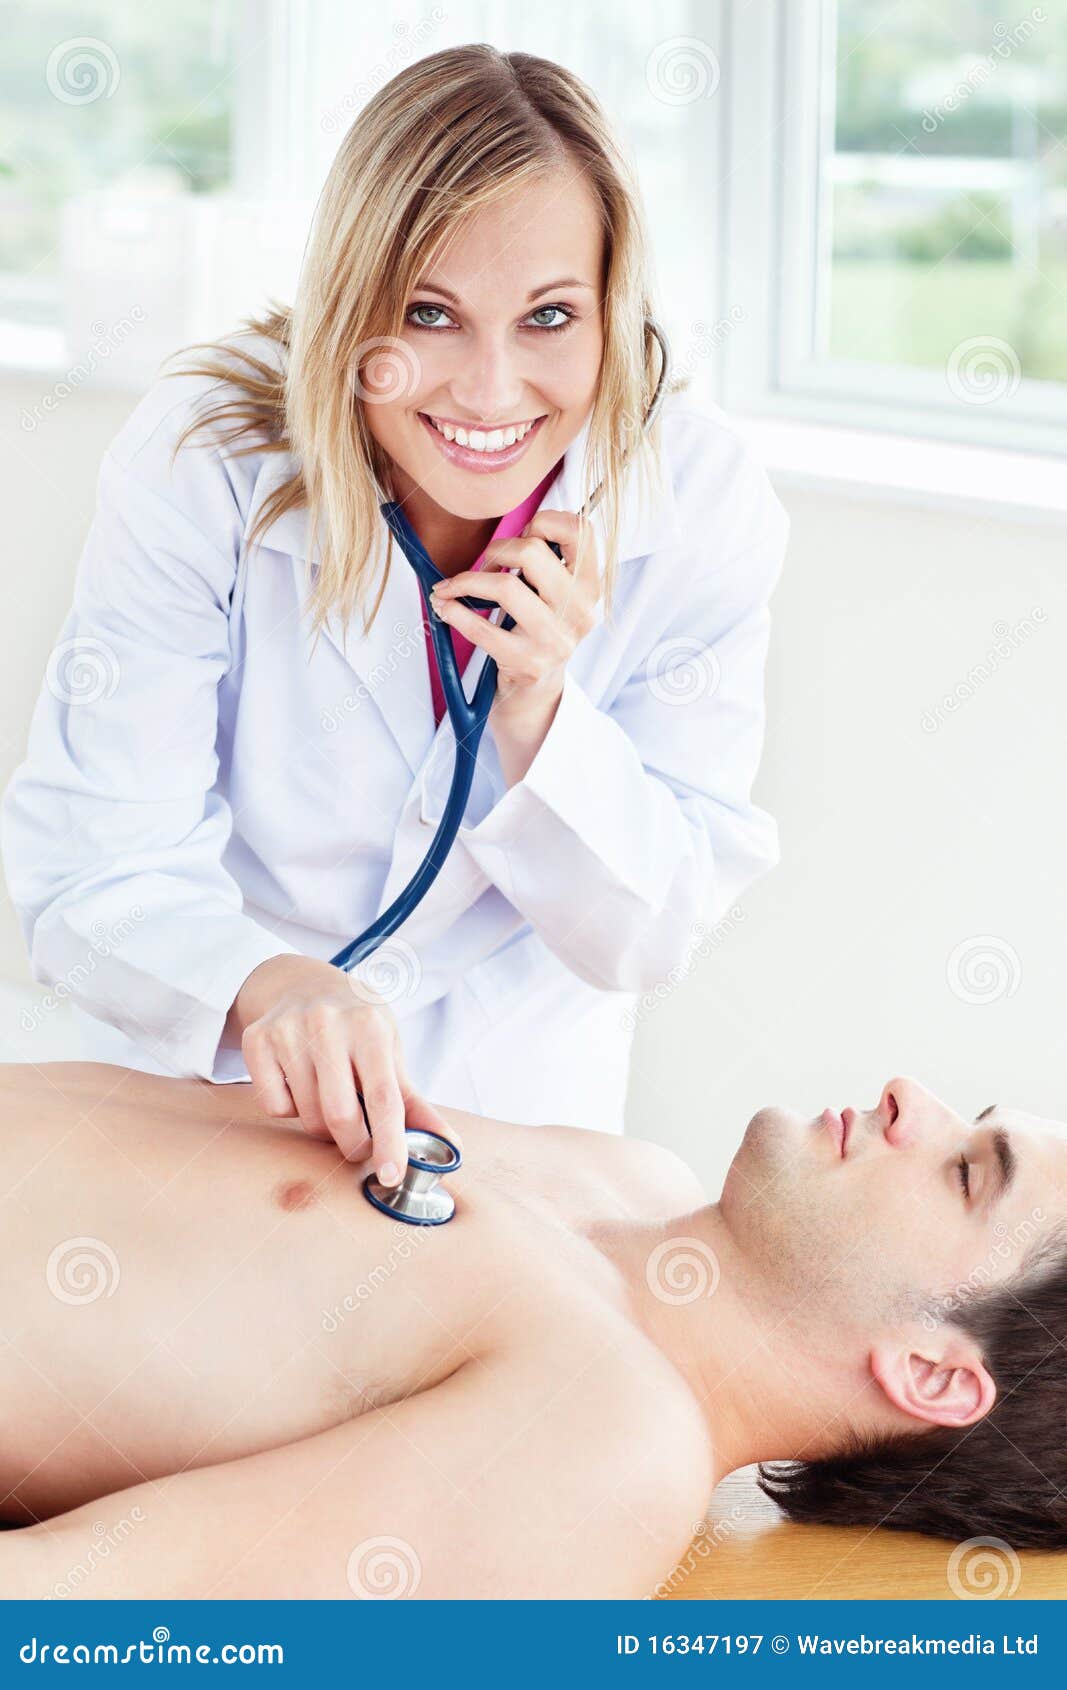 Девушку осматривает врач